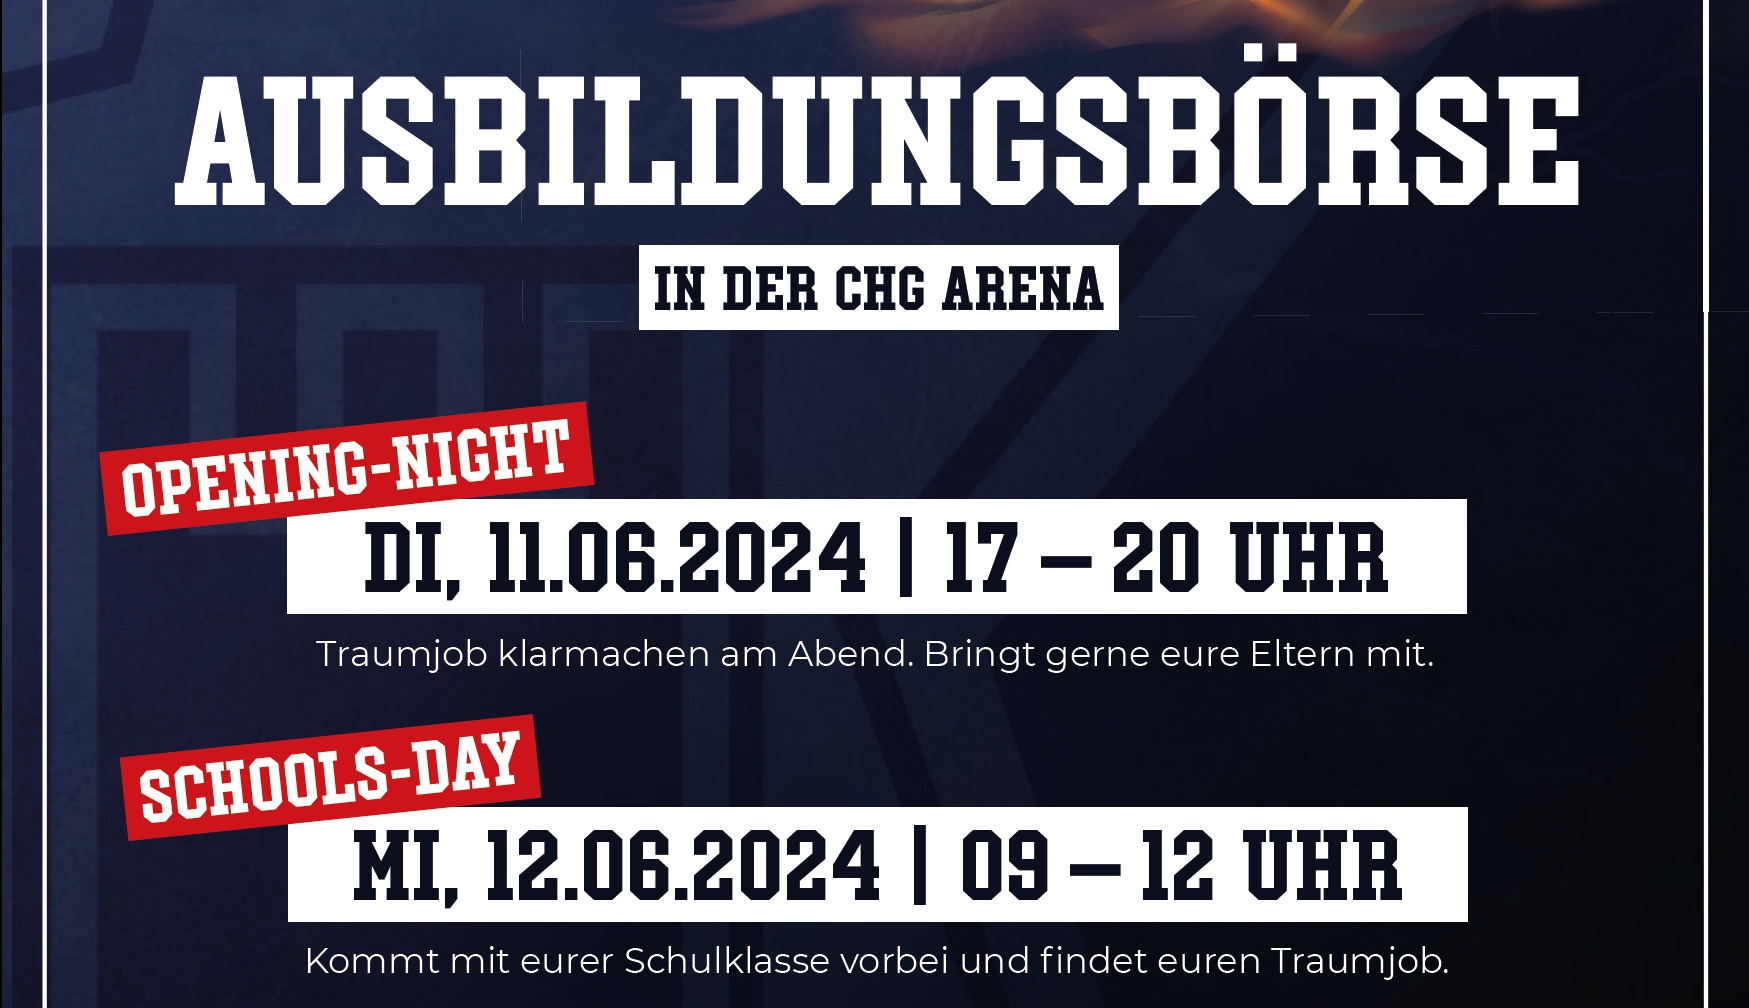 Anmeldung Crunchtime Ausbildungsbörse / Ausbildungsmesse CHG Arena Ravensburg 2024 - Aussteller WAHLTEC GmbH